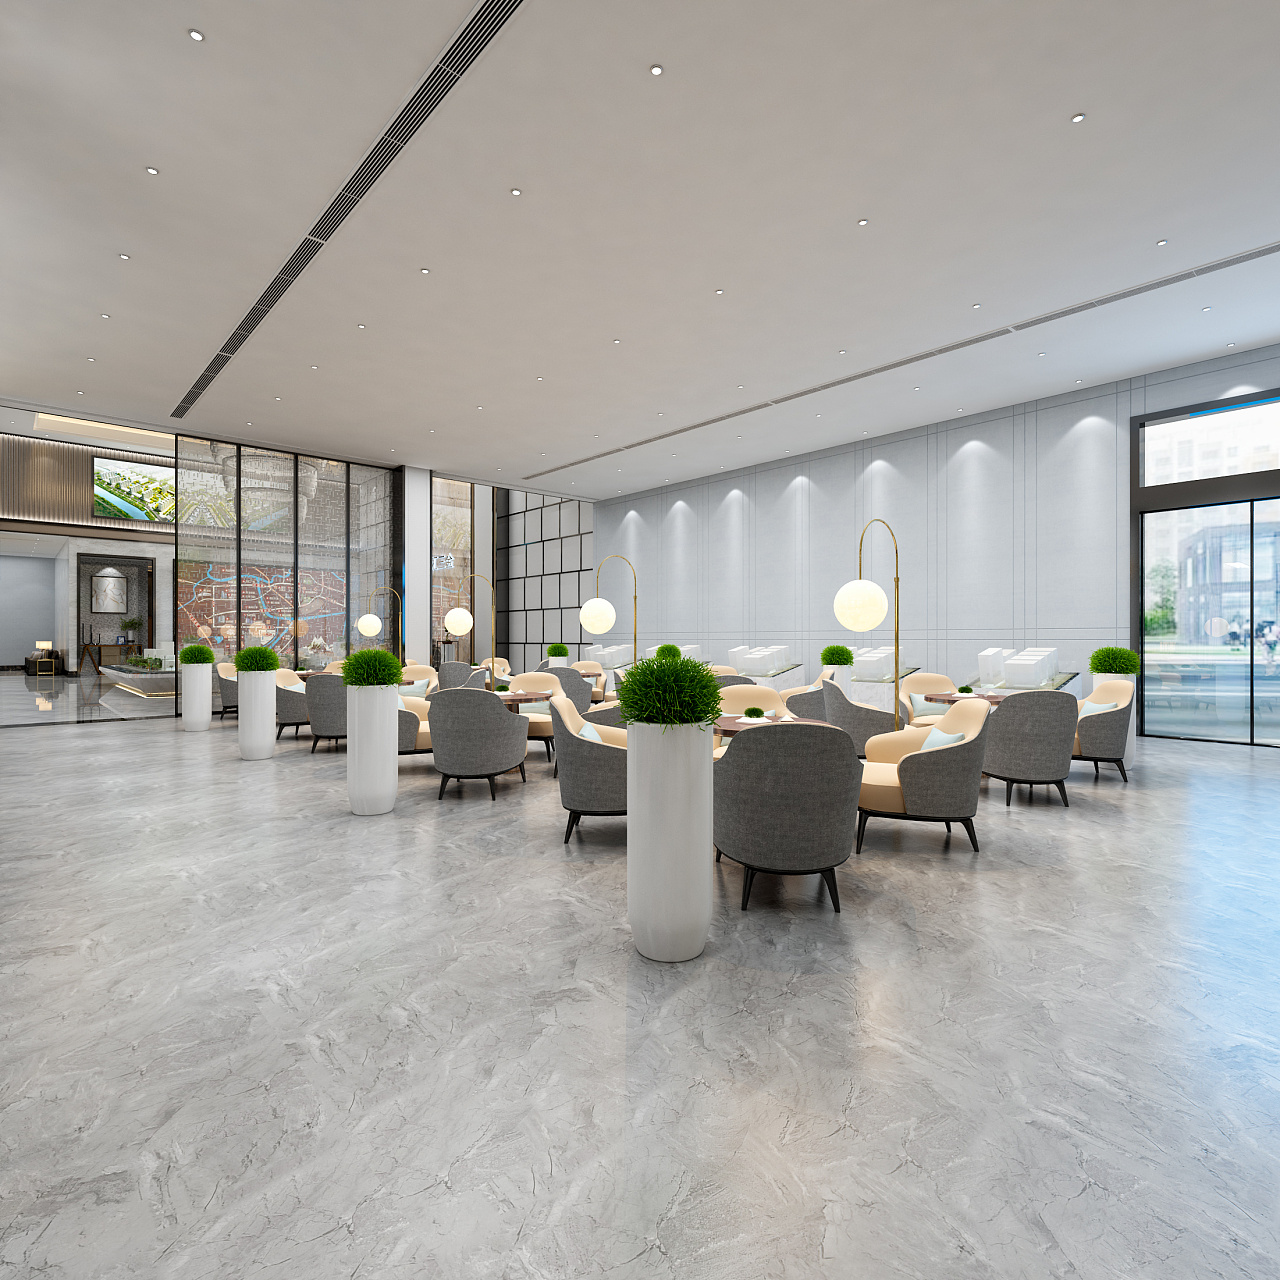 新中式售楼部接待区 - 效果图交流区-建E室内设计网